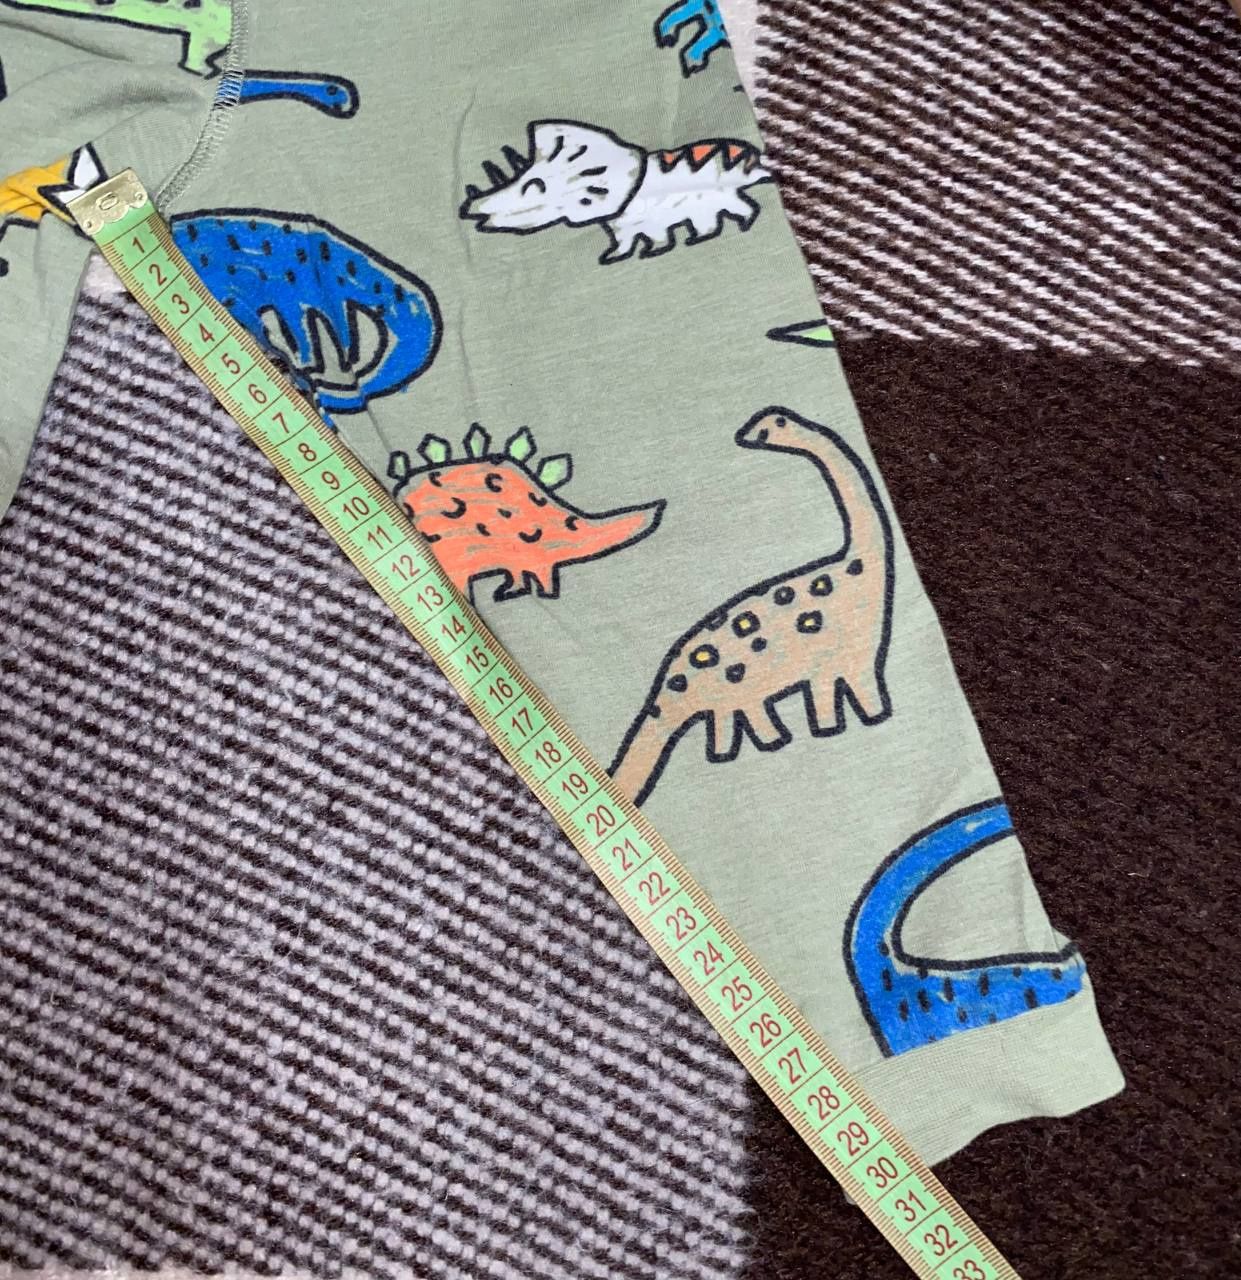 Дитяча піжама для хлопчика з принтом динозаврів